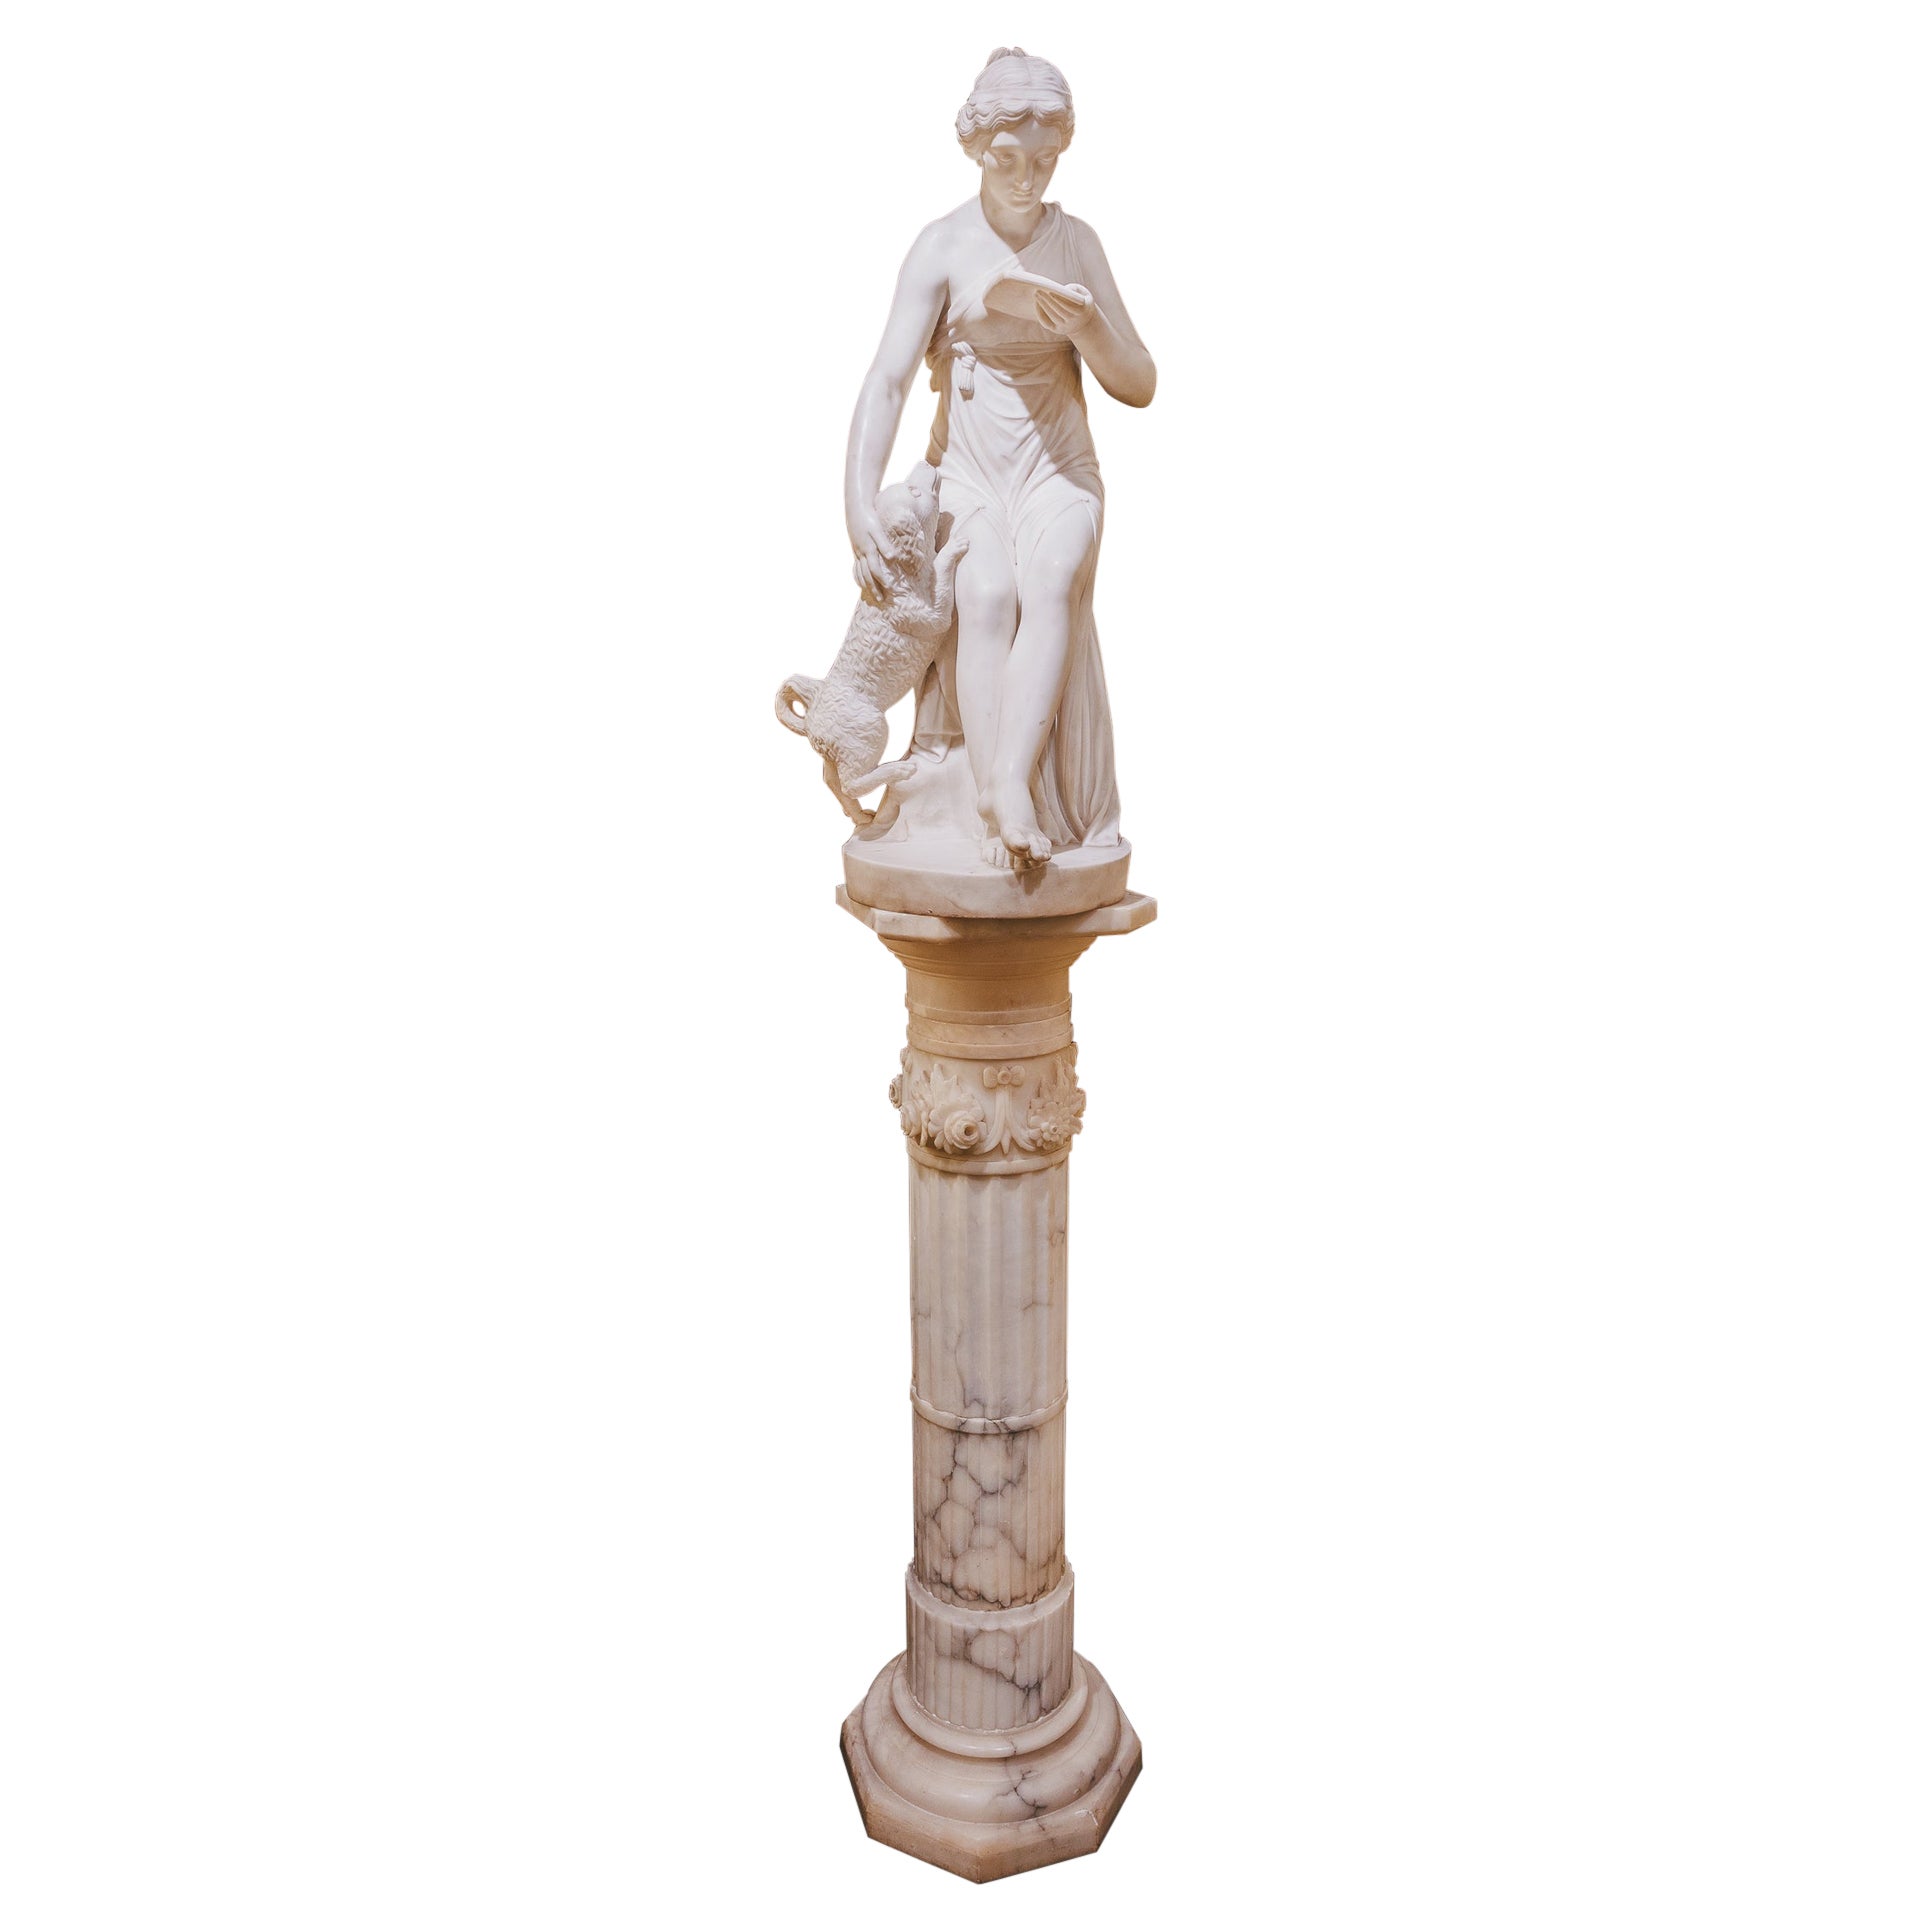 Belle statue italienne en marbre de Carrera du XIXe siècle représentant une femme avec son chien.